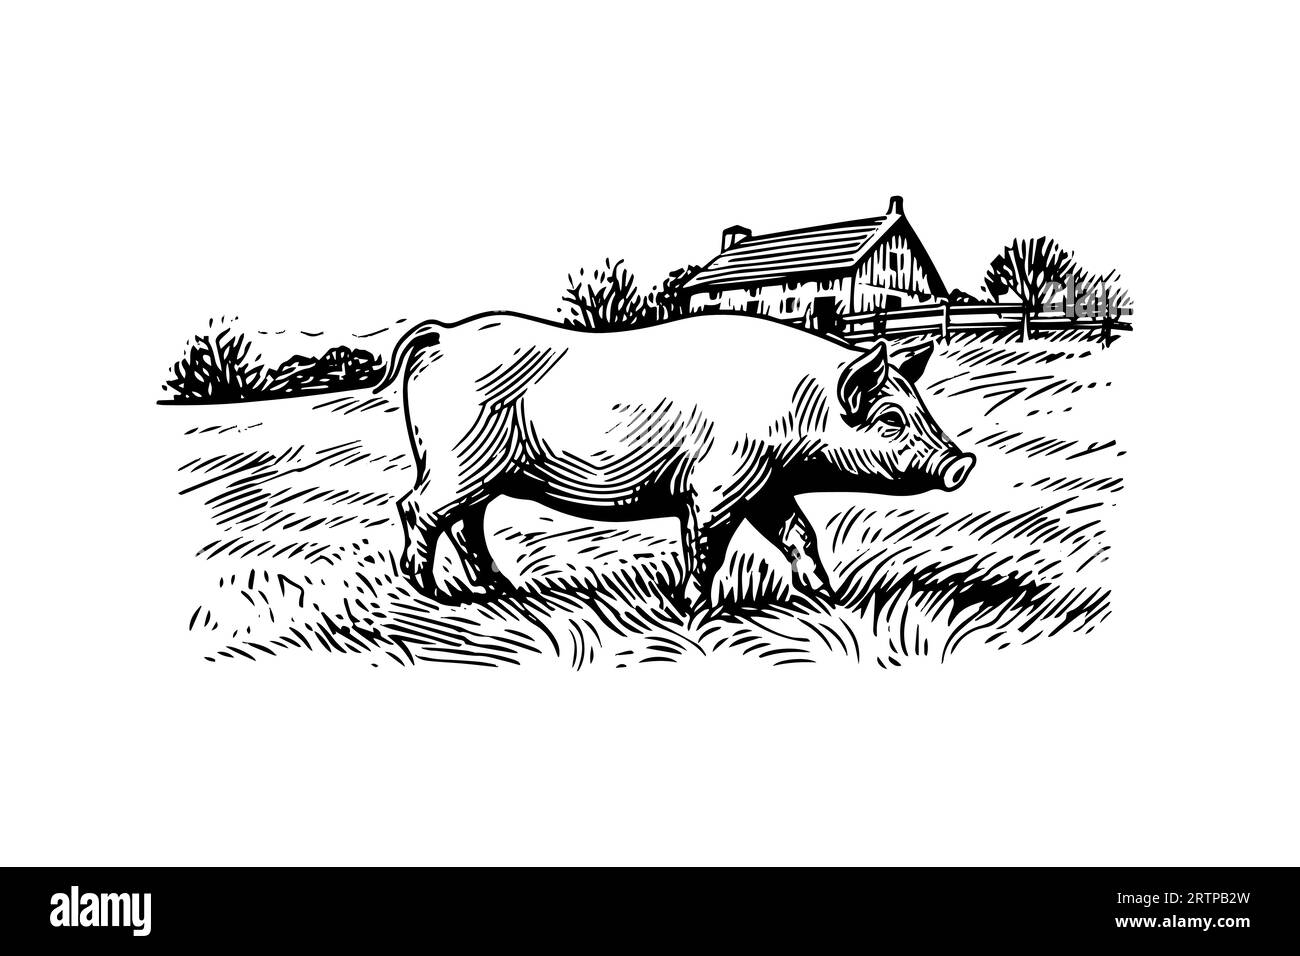 Image vectorielle gravée dessinée à la main de paysage de village avec des cochons mangent de l'herbe dans le pâturage. Illustration de Vecteur